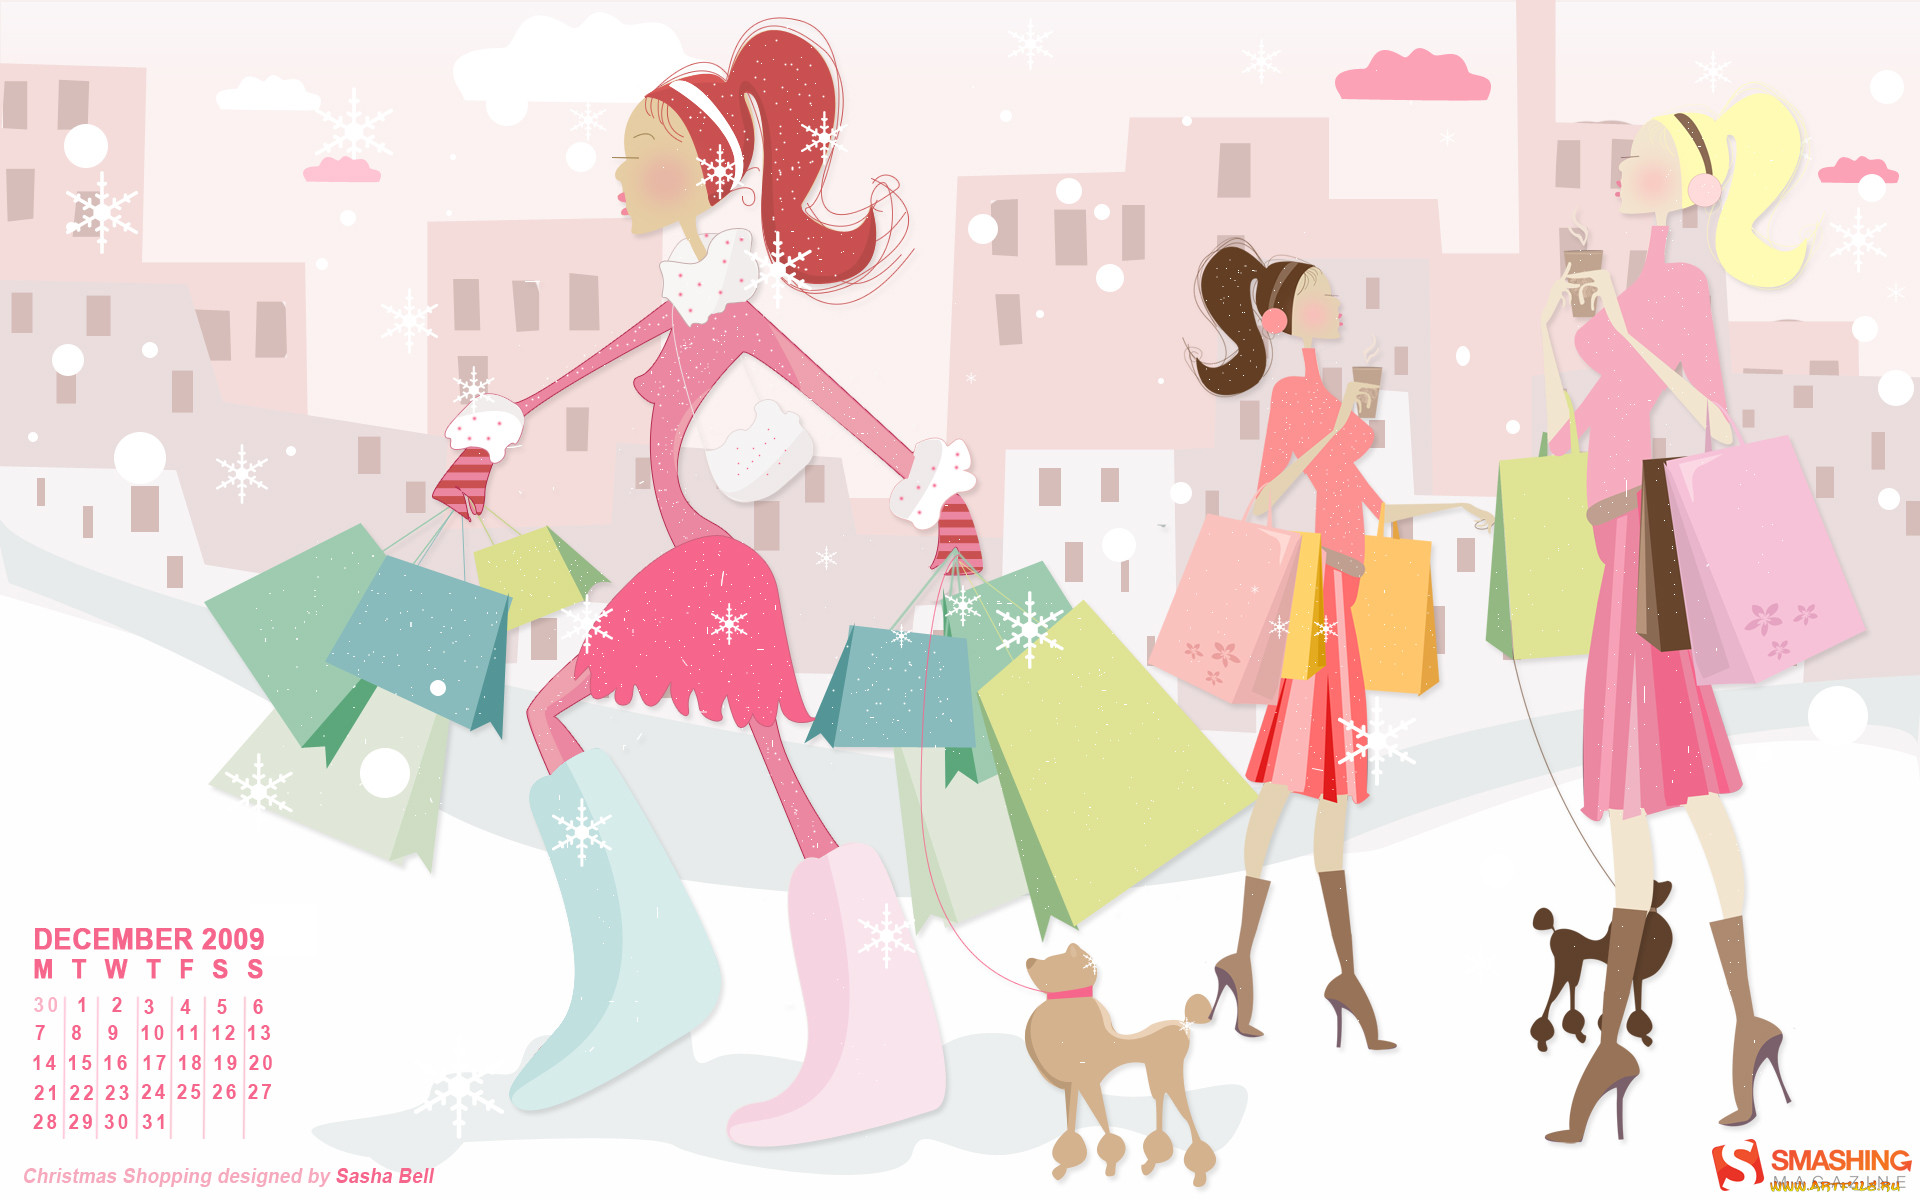 Shop all new. Фоновое изображение для магазина одежды. Картинки для баннера магазин одежды. Модная одежда фон. Картинки для интернет магазина.